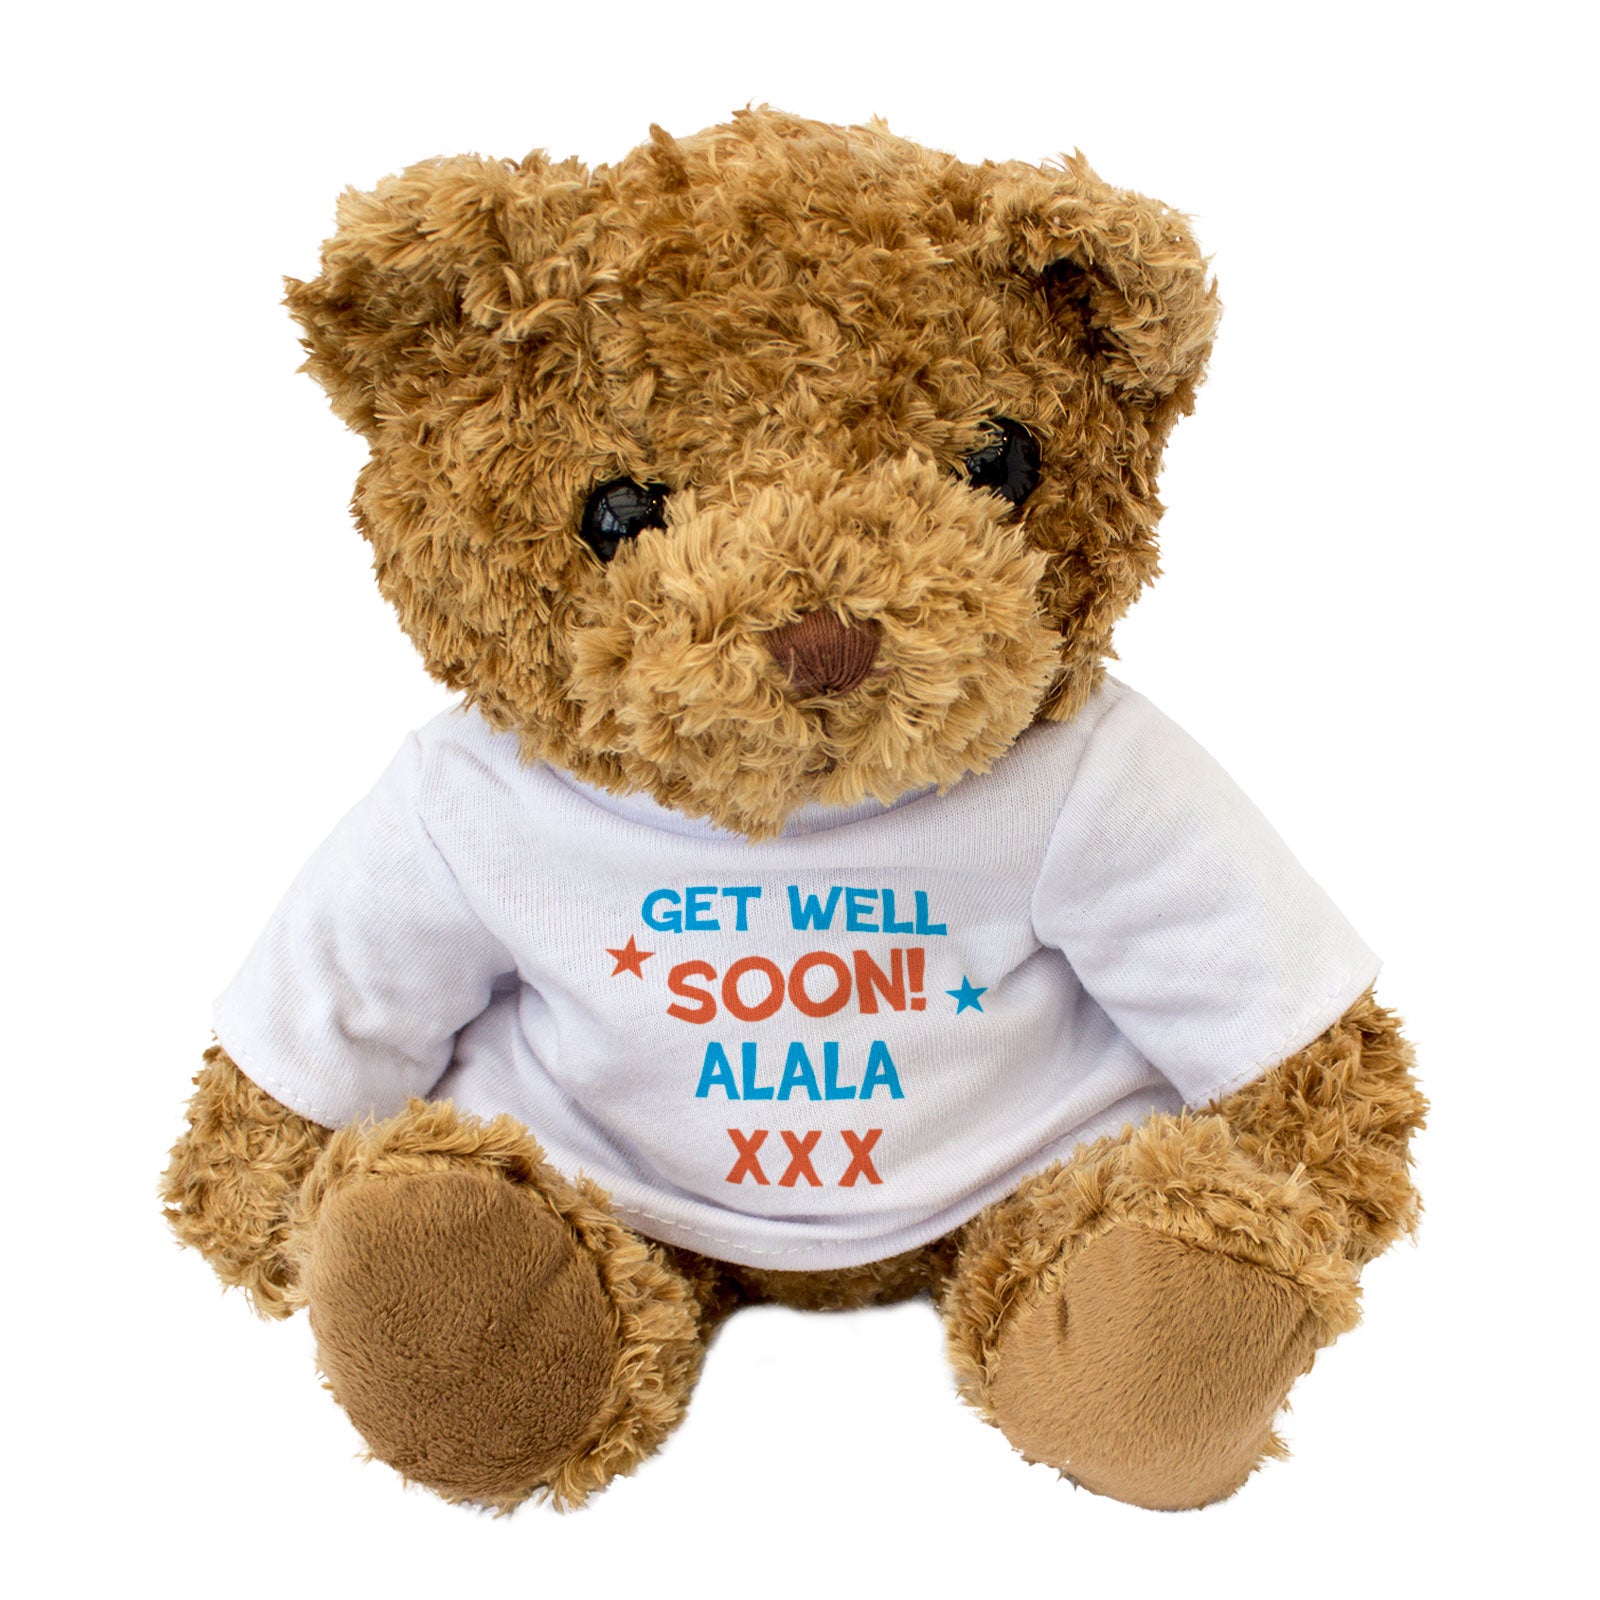 Get Well Soon Alala - Teddy Bear